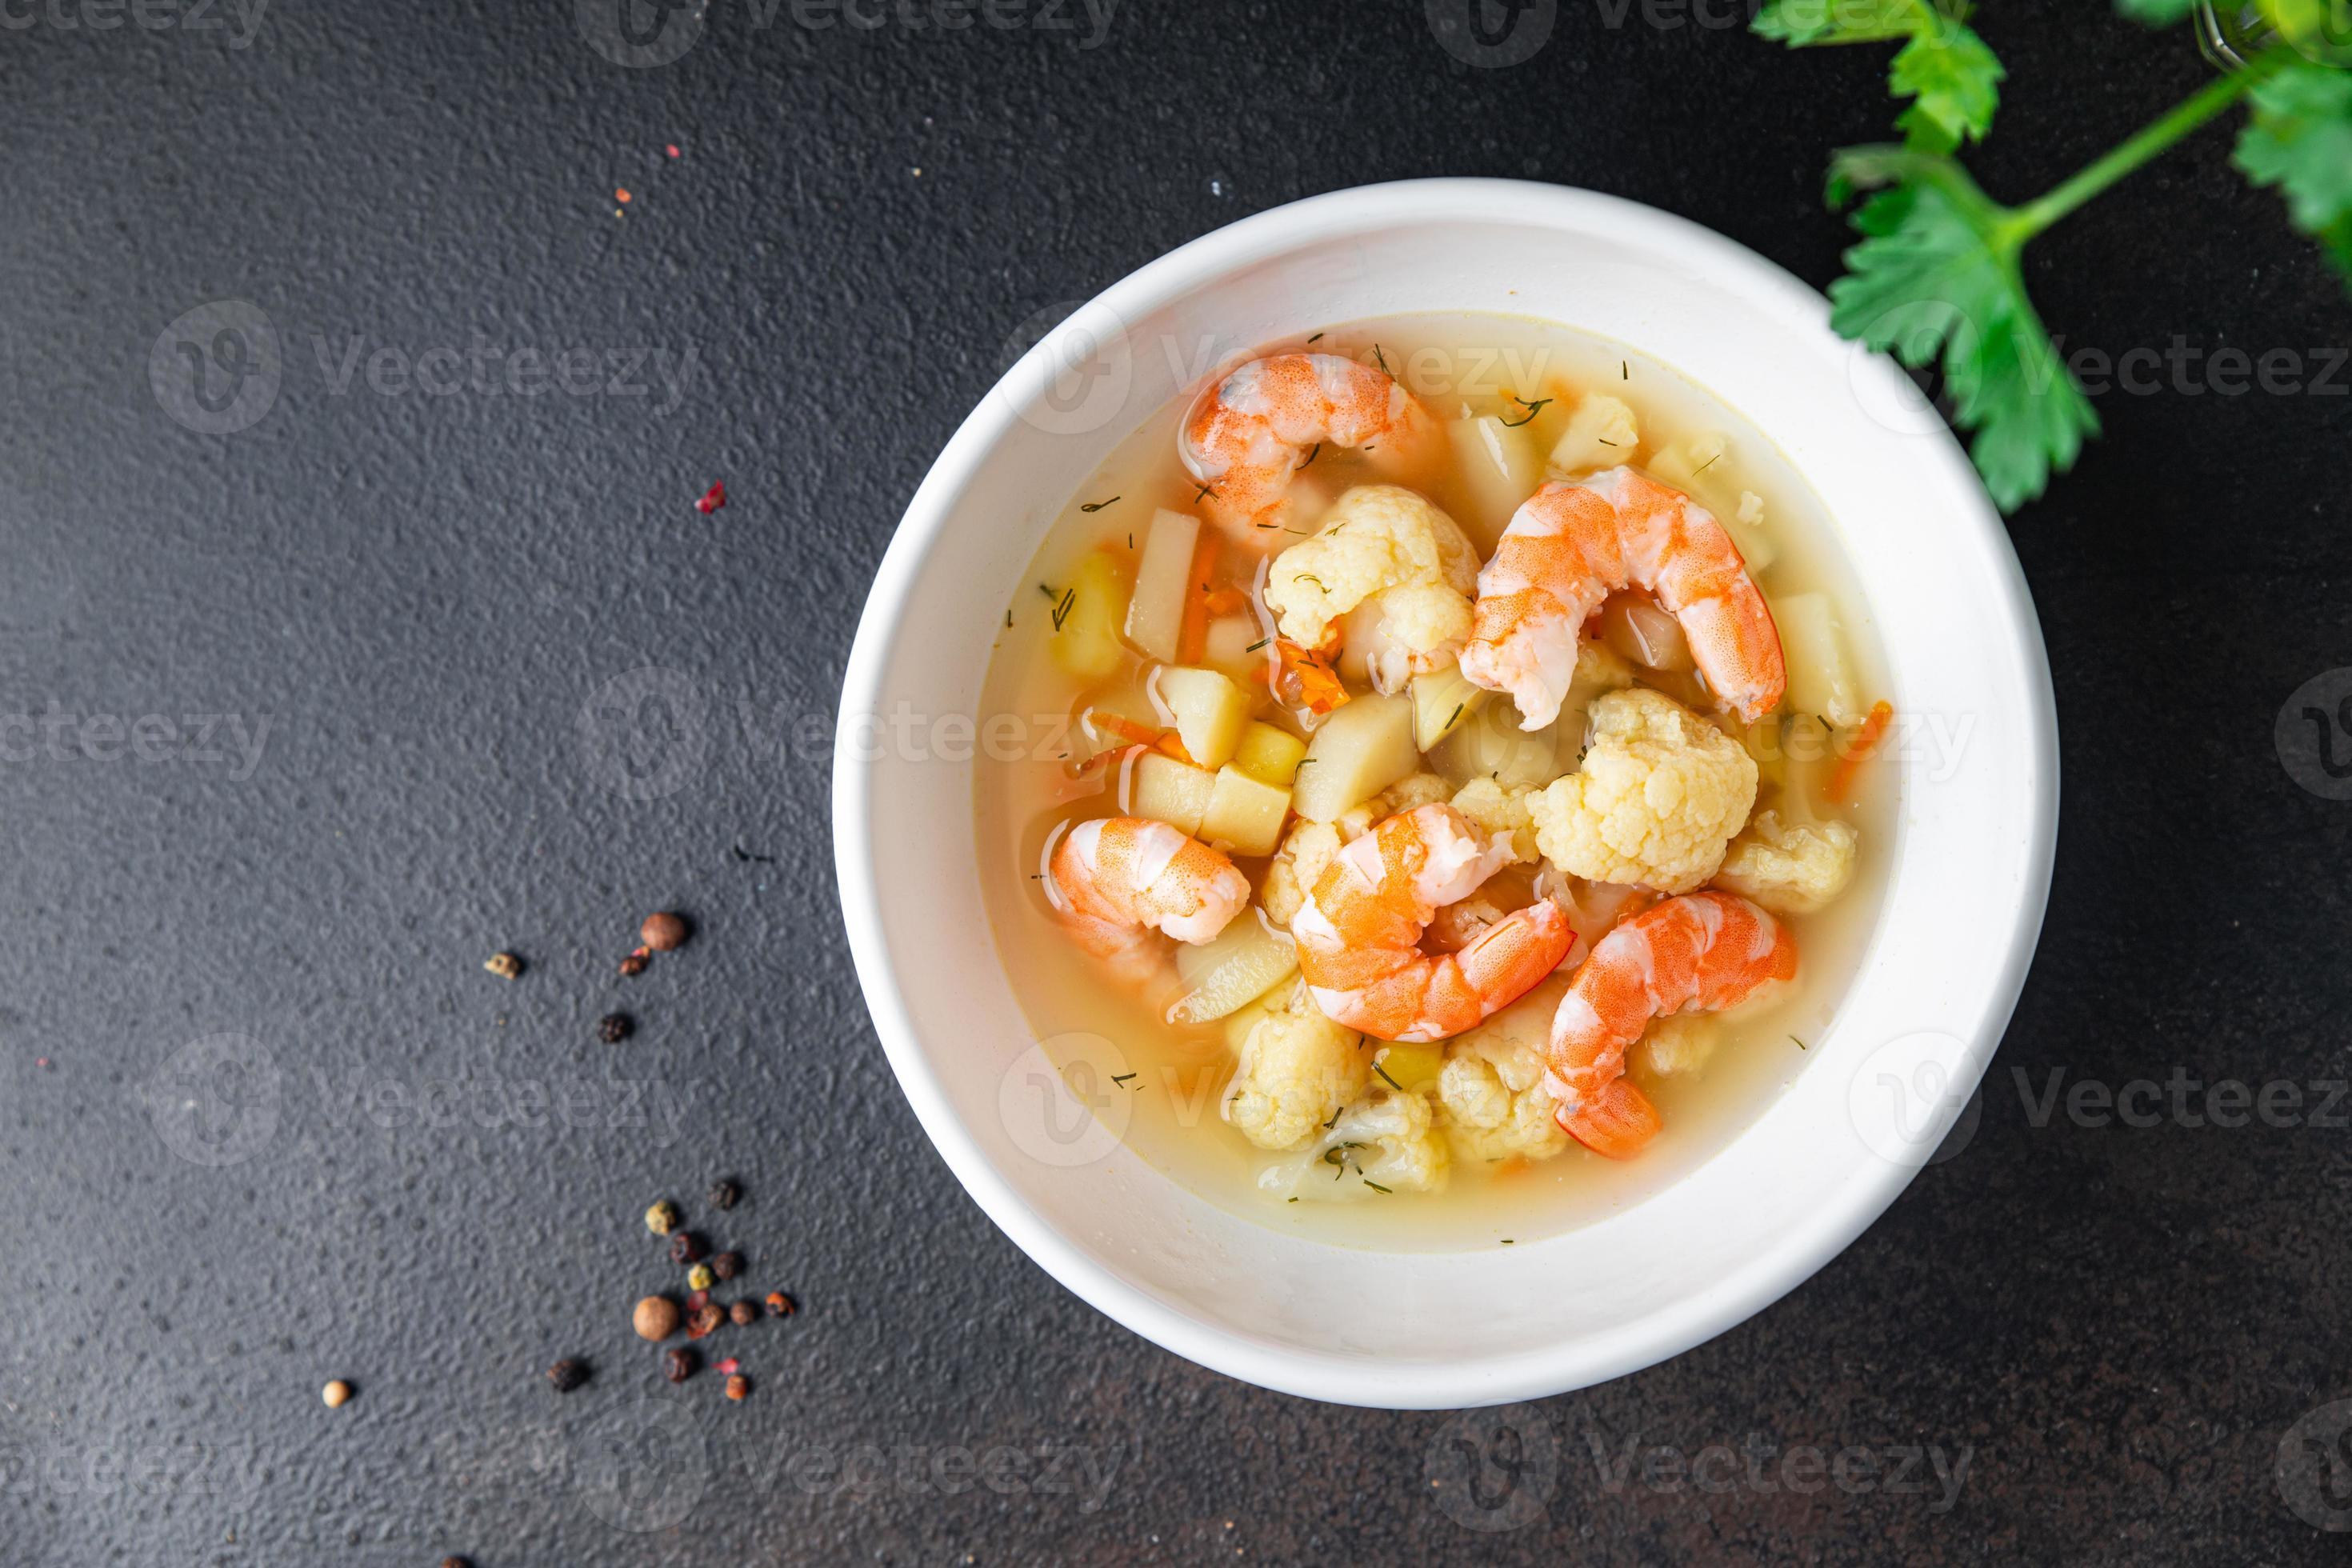 zuppa di gamberi verdure frutti di mare primo piatto pasto sano dieta pescetarian foto